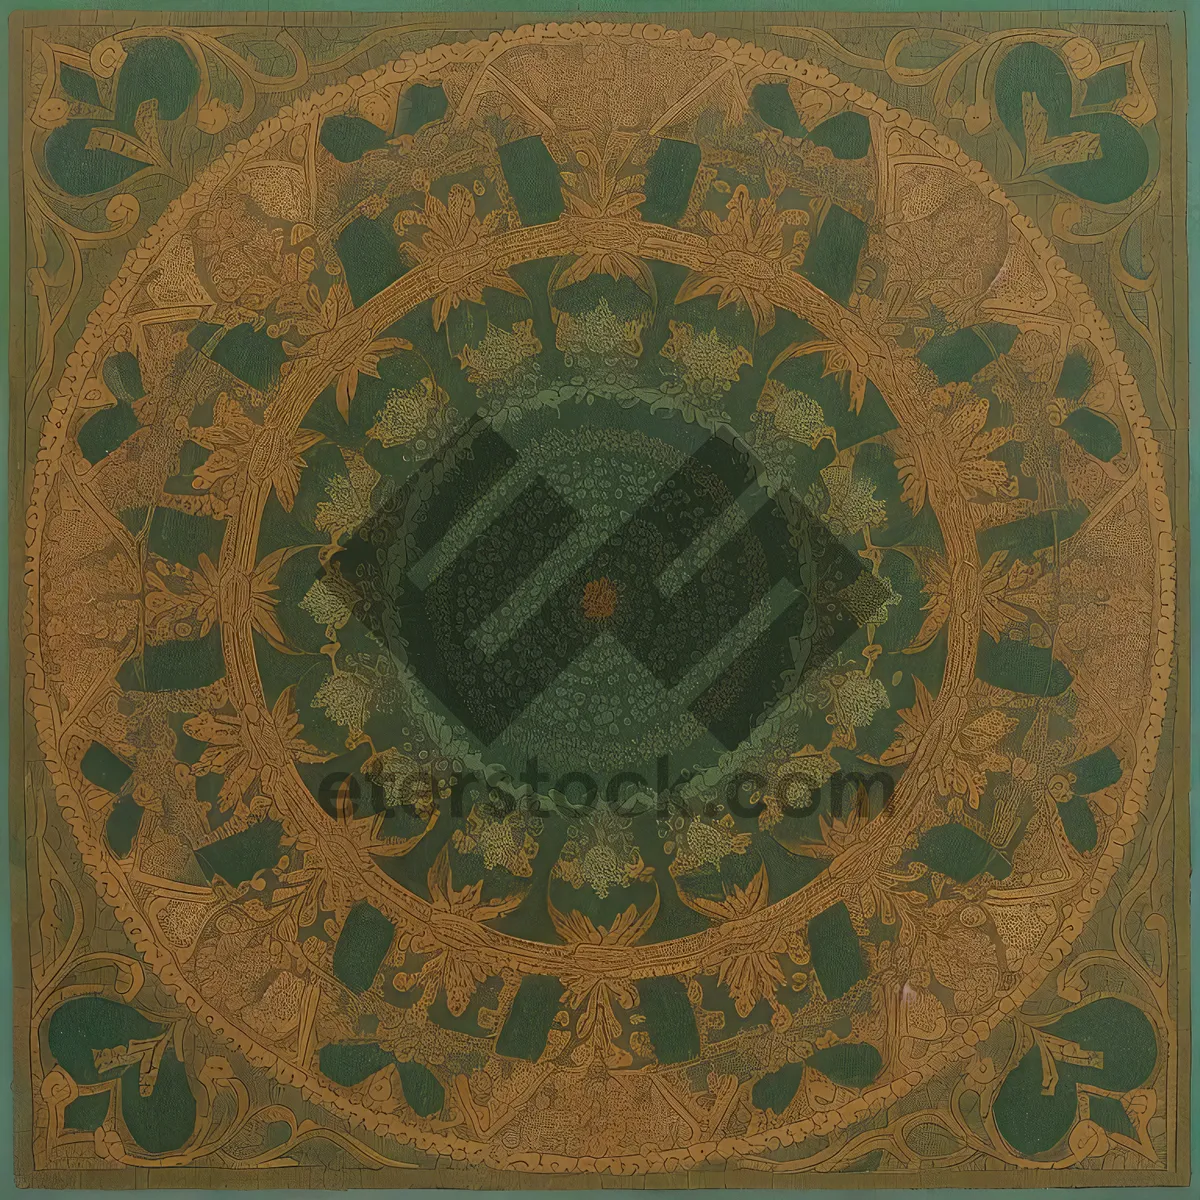 Picture of Vintage Arabesque Mosaic Art Design: Decorative Antique Gong.